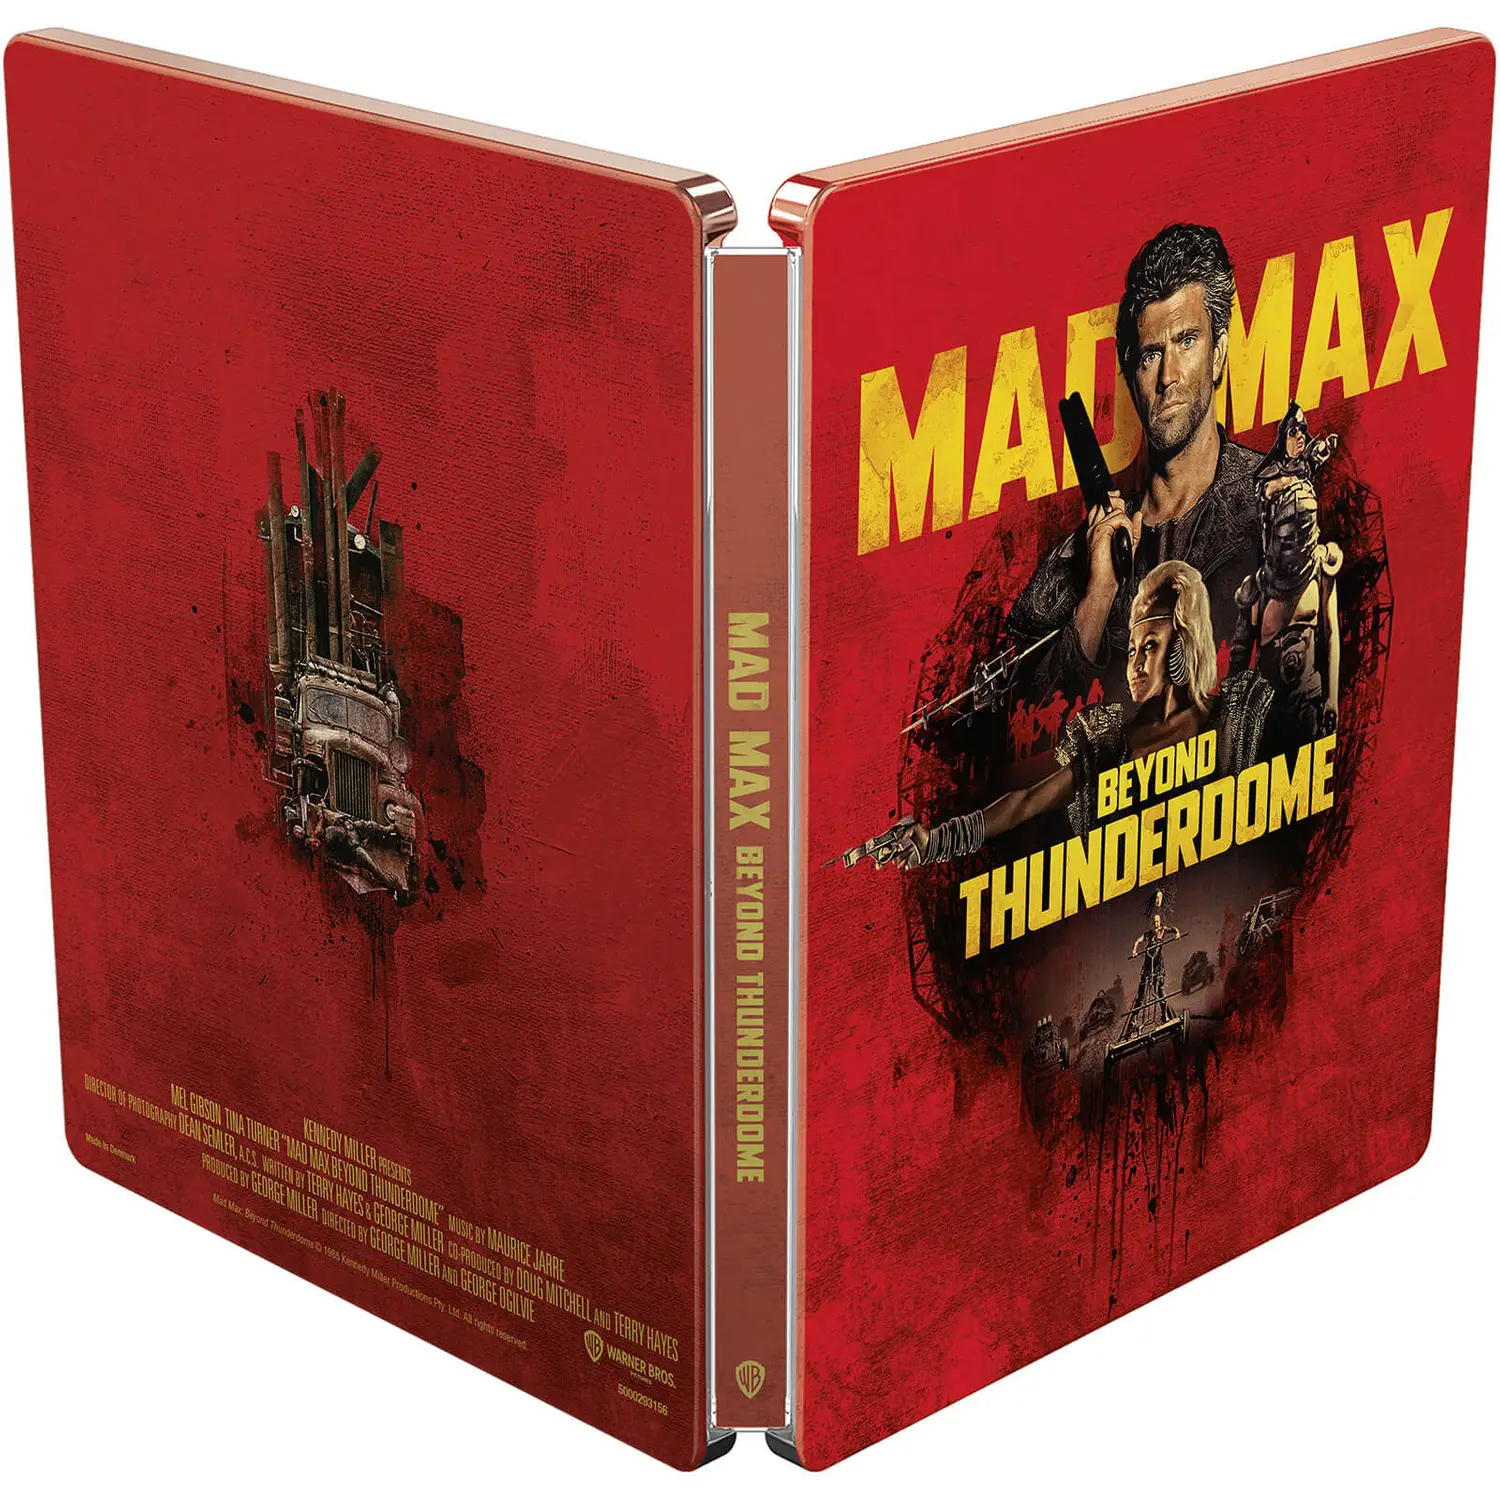 マッドマックス アンソロジー MAD MAX 4K zavvi steelbook zavvi スチールブック